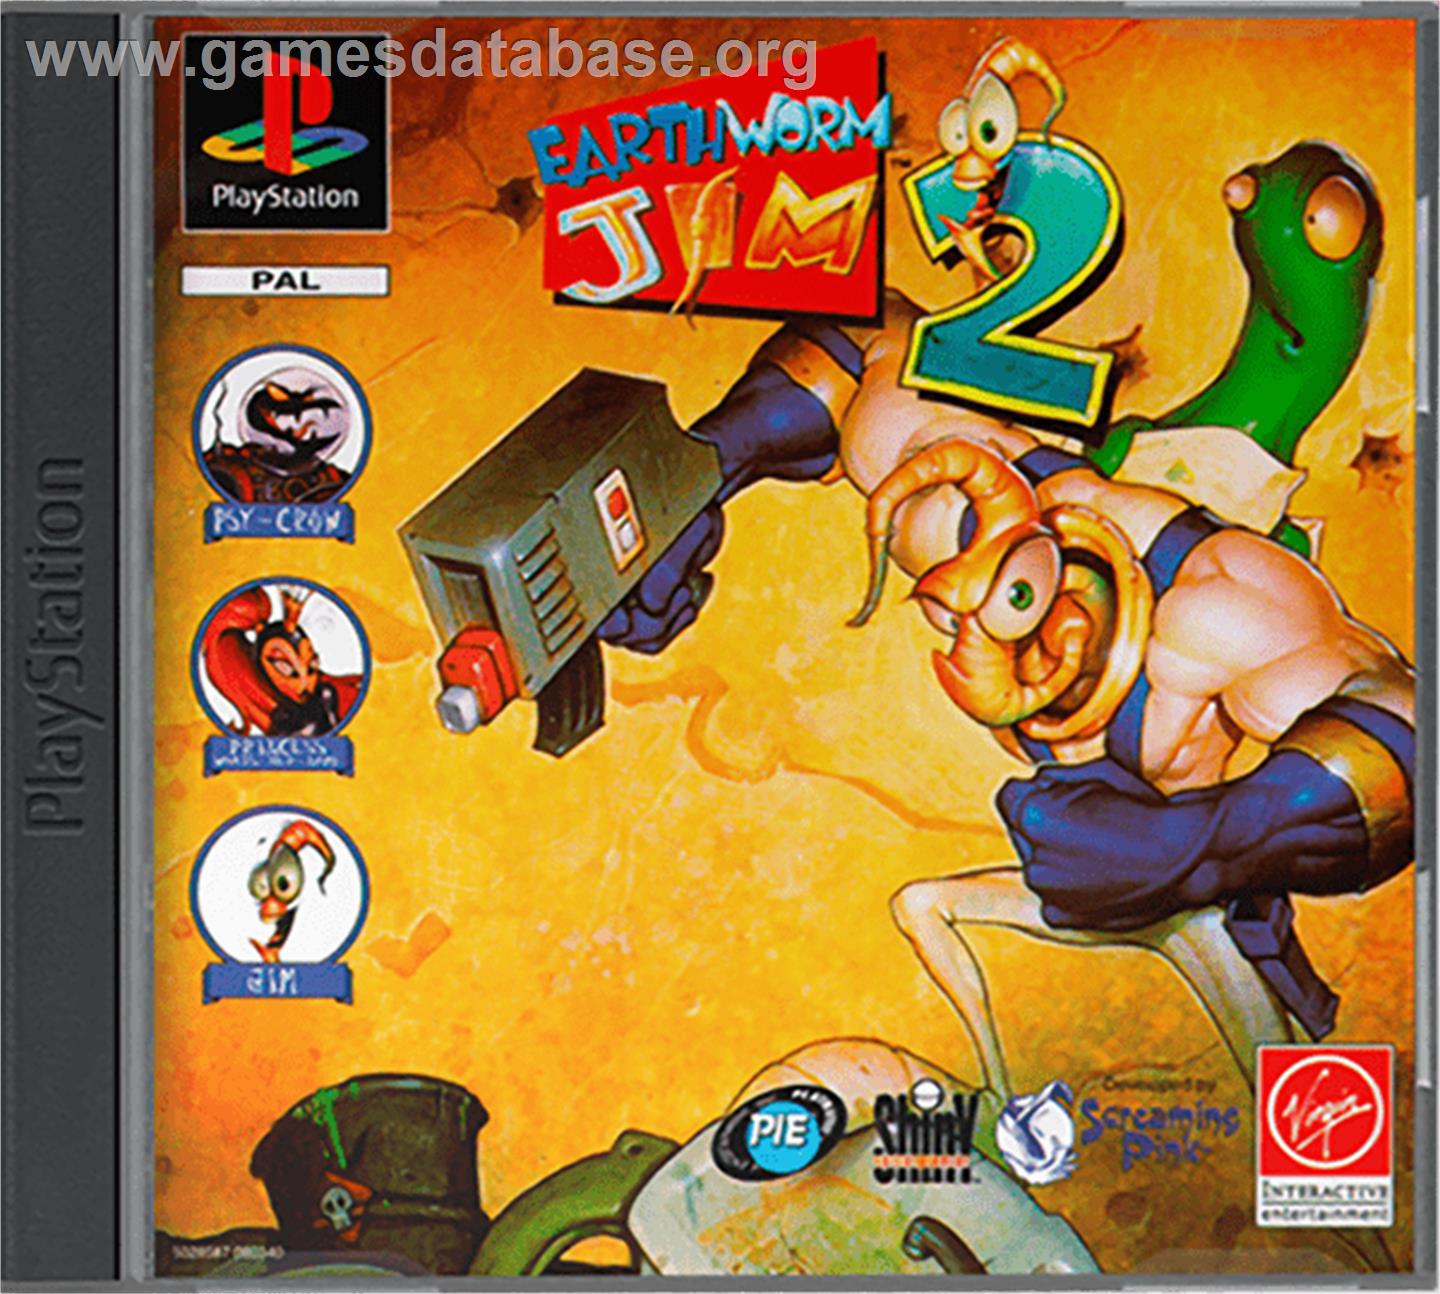 Earthworm Jim 2 - Sony Playstation - Artwork - Box